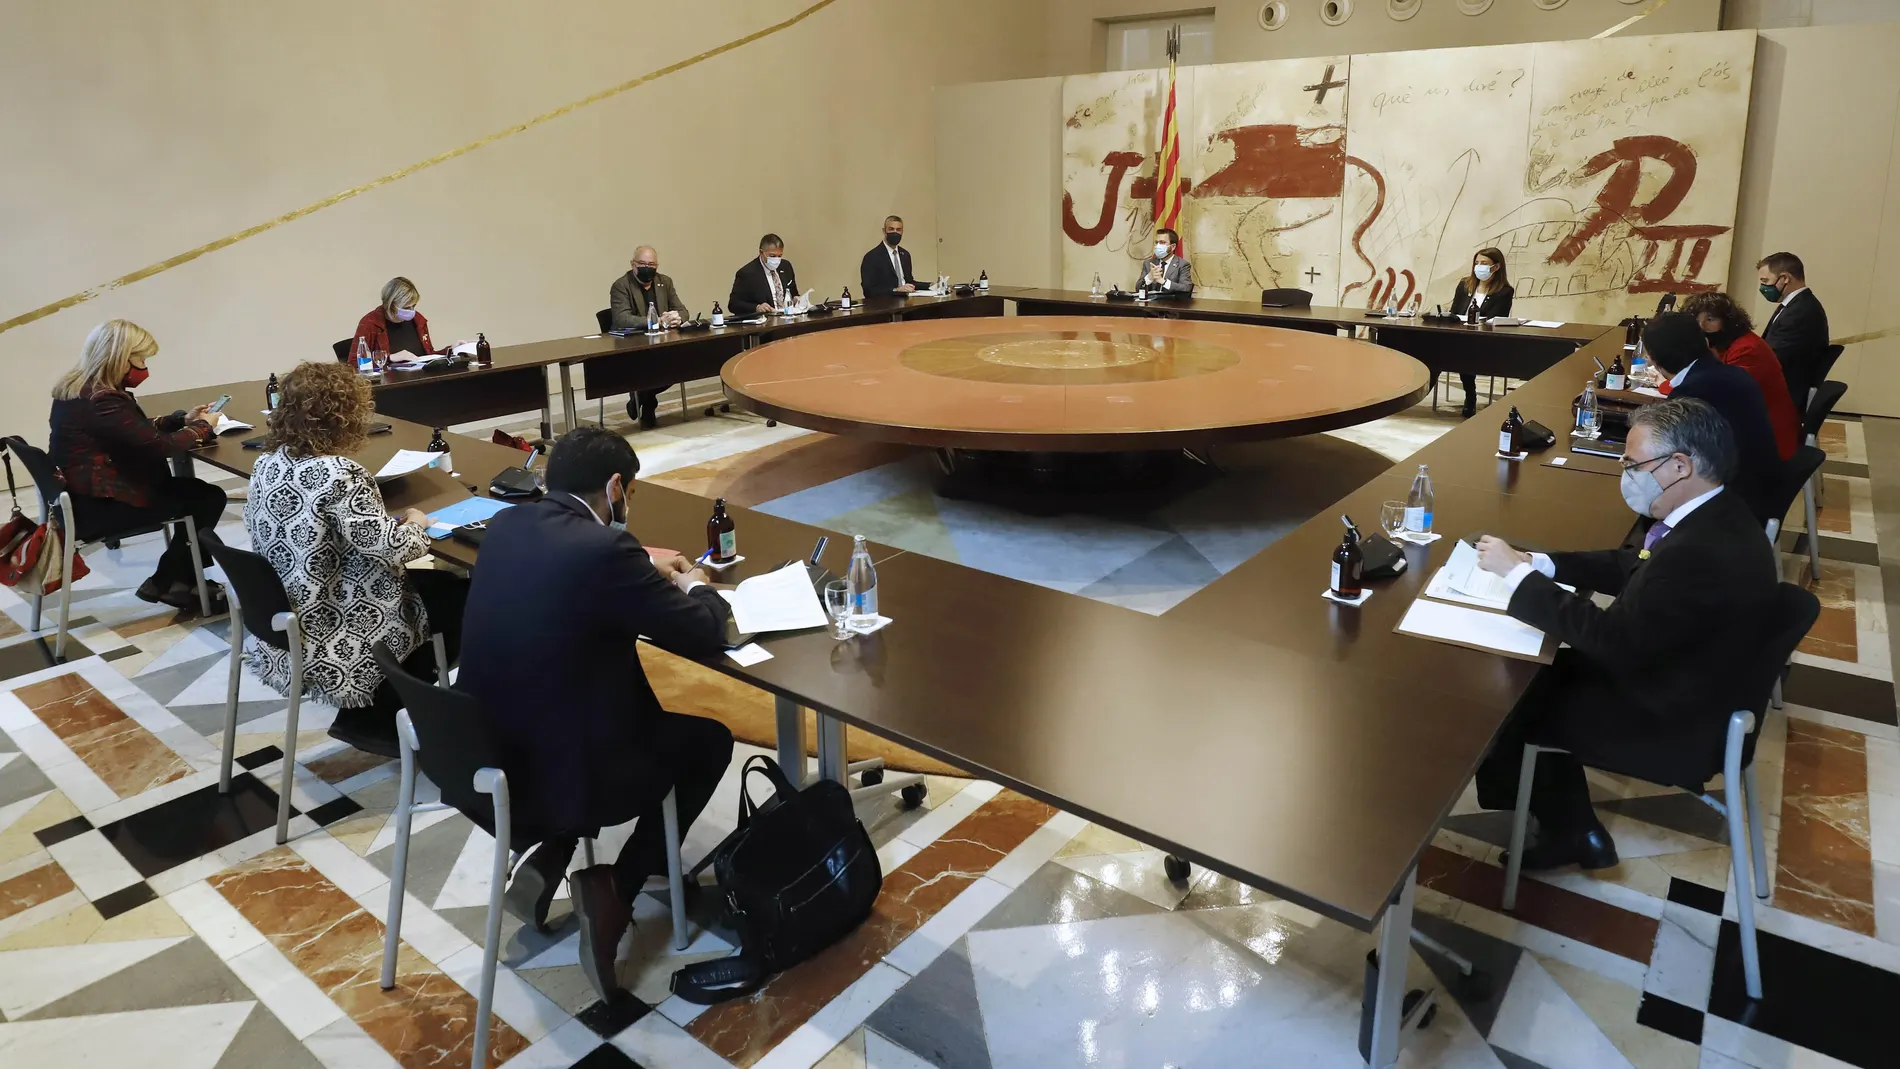 El vicepresidente del Govern en funciones, Pere Aragonés, ha presidido este martes la reunión semanal del gobierno de la Generalitat, mientras prosiguen las negociaciones entre ERC y JxCat